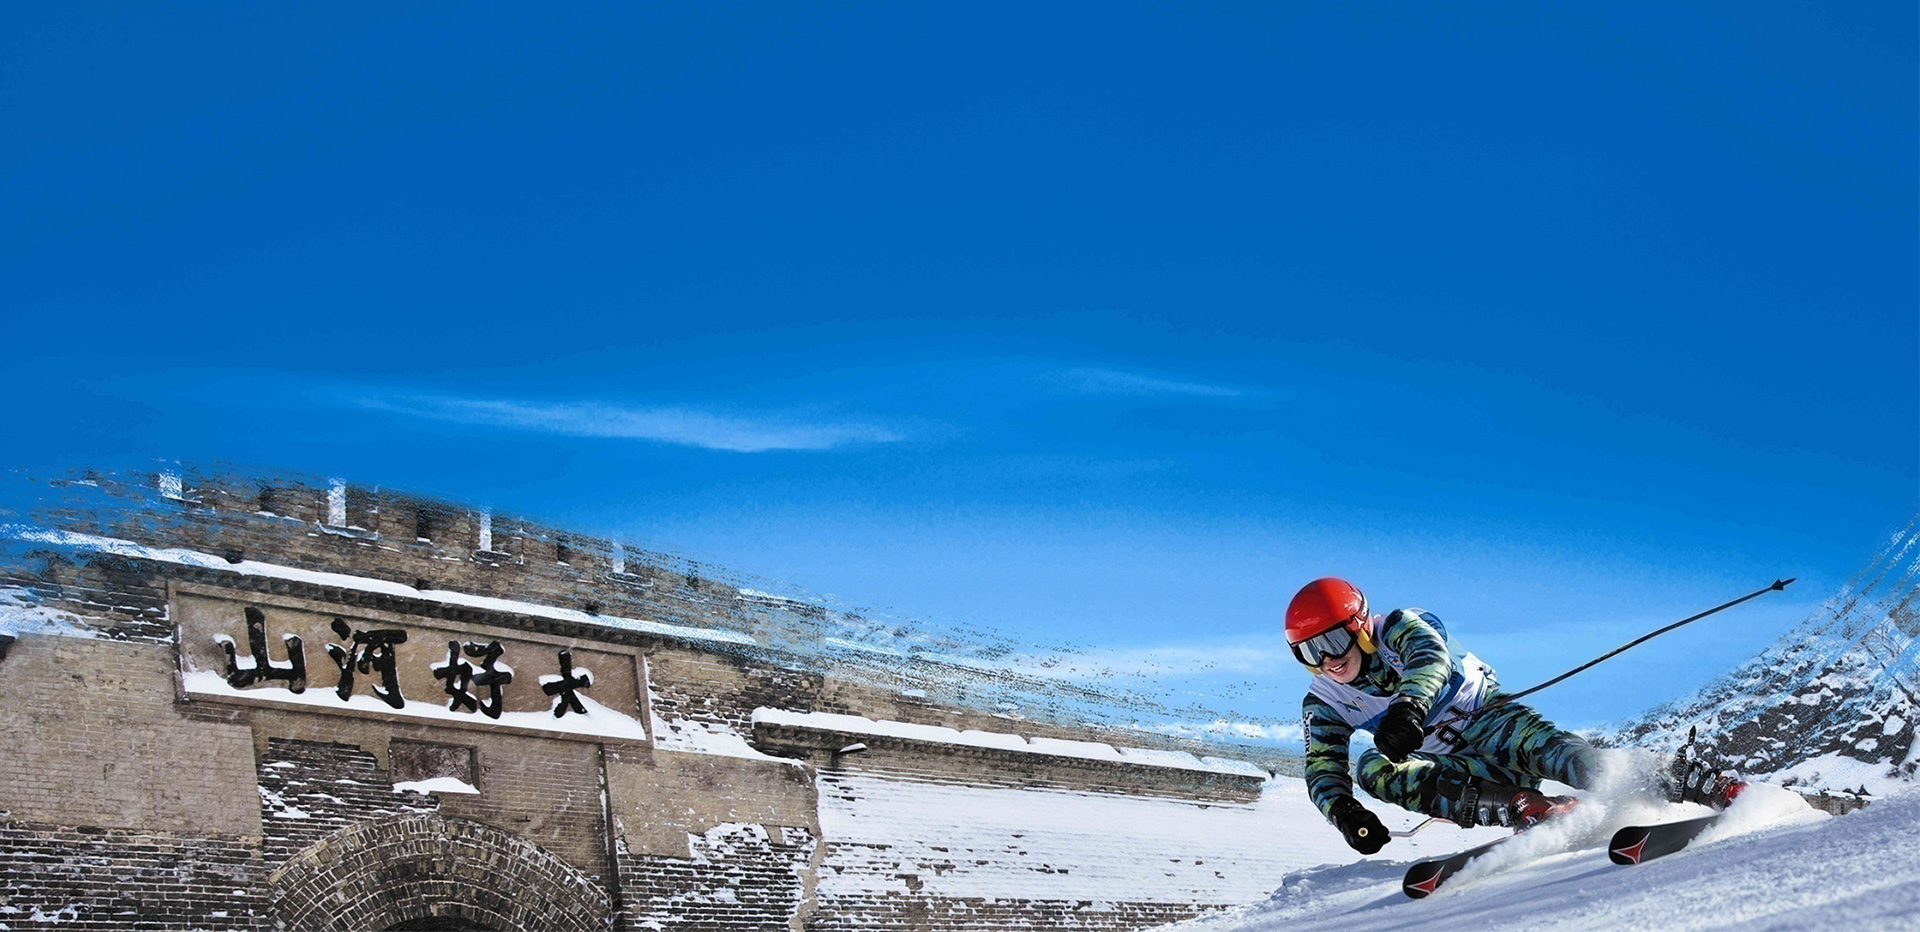 体验激情滑雪 尽在吉林品质级雪场